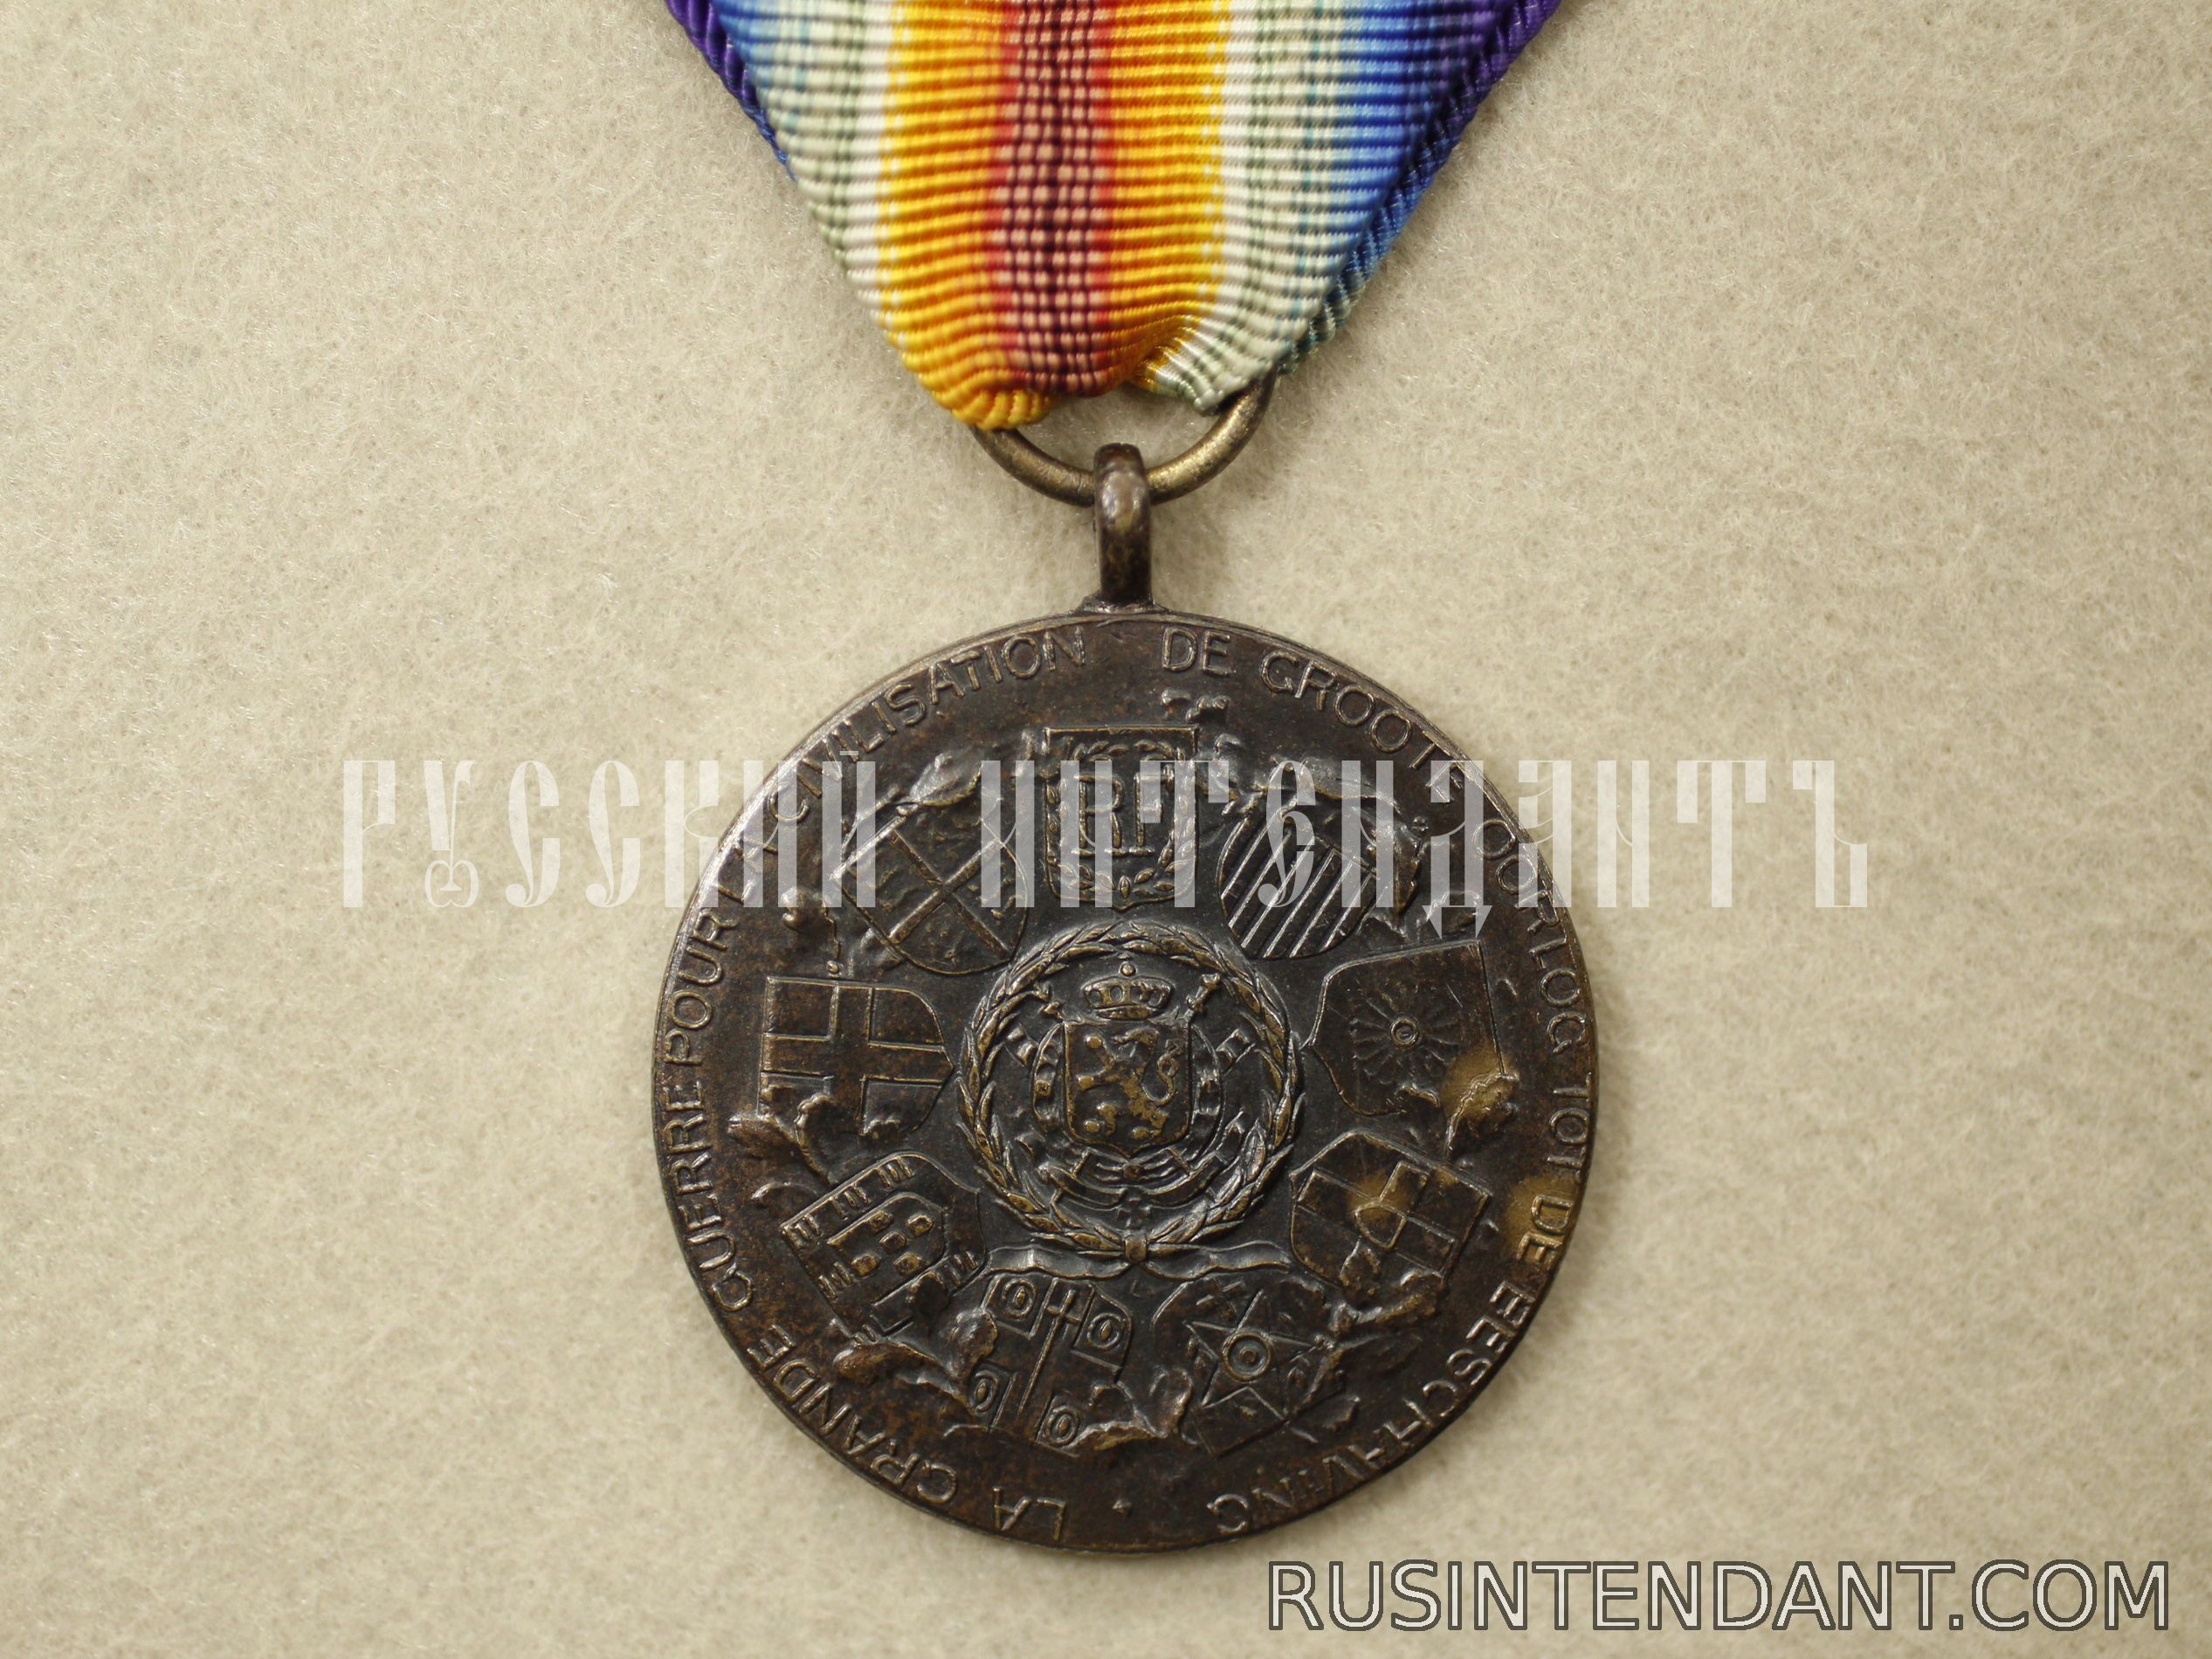 Фото 2: Бельгийская медаль Победы 